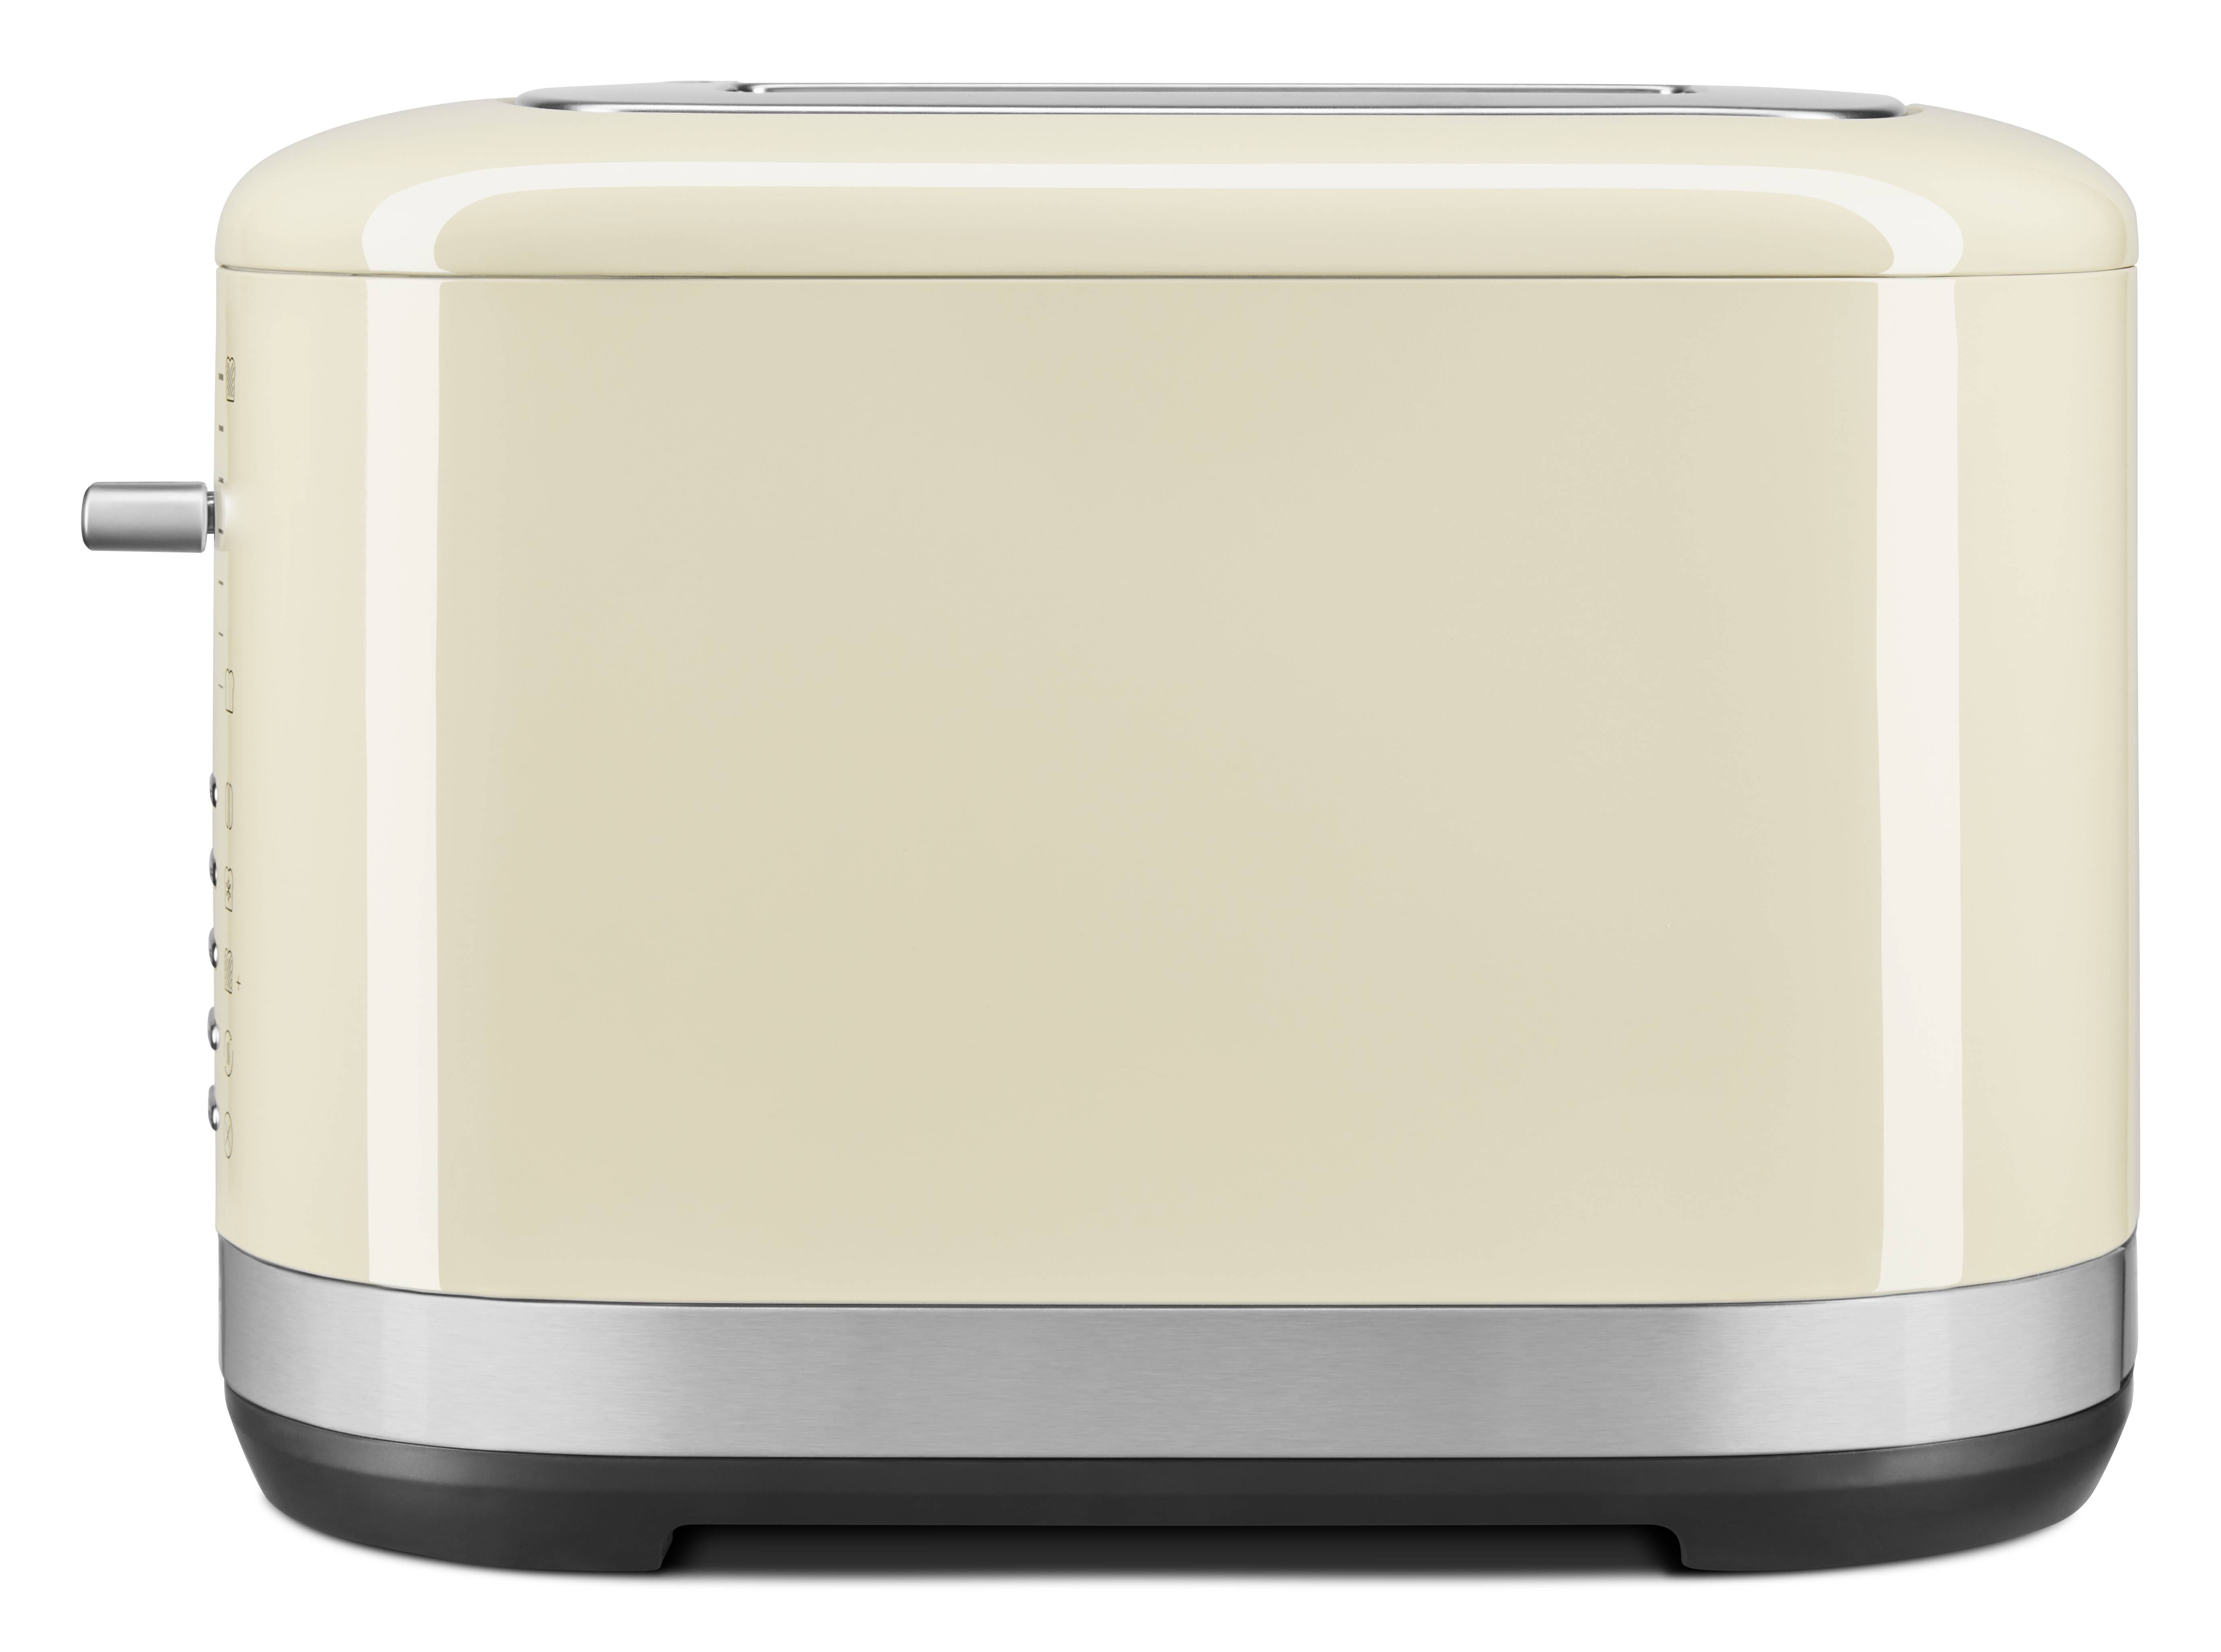 KitchenAid Toaster 2 Scheiben mit manueller Bedienung - Creme